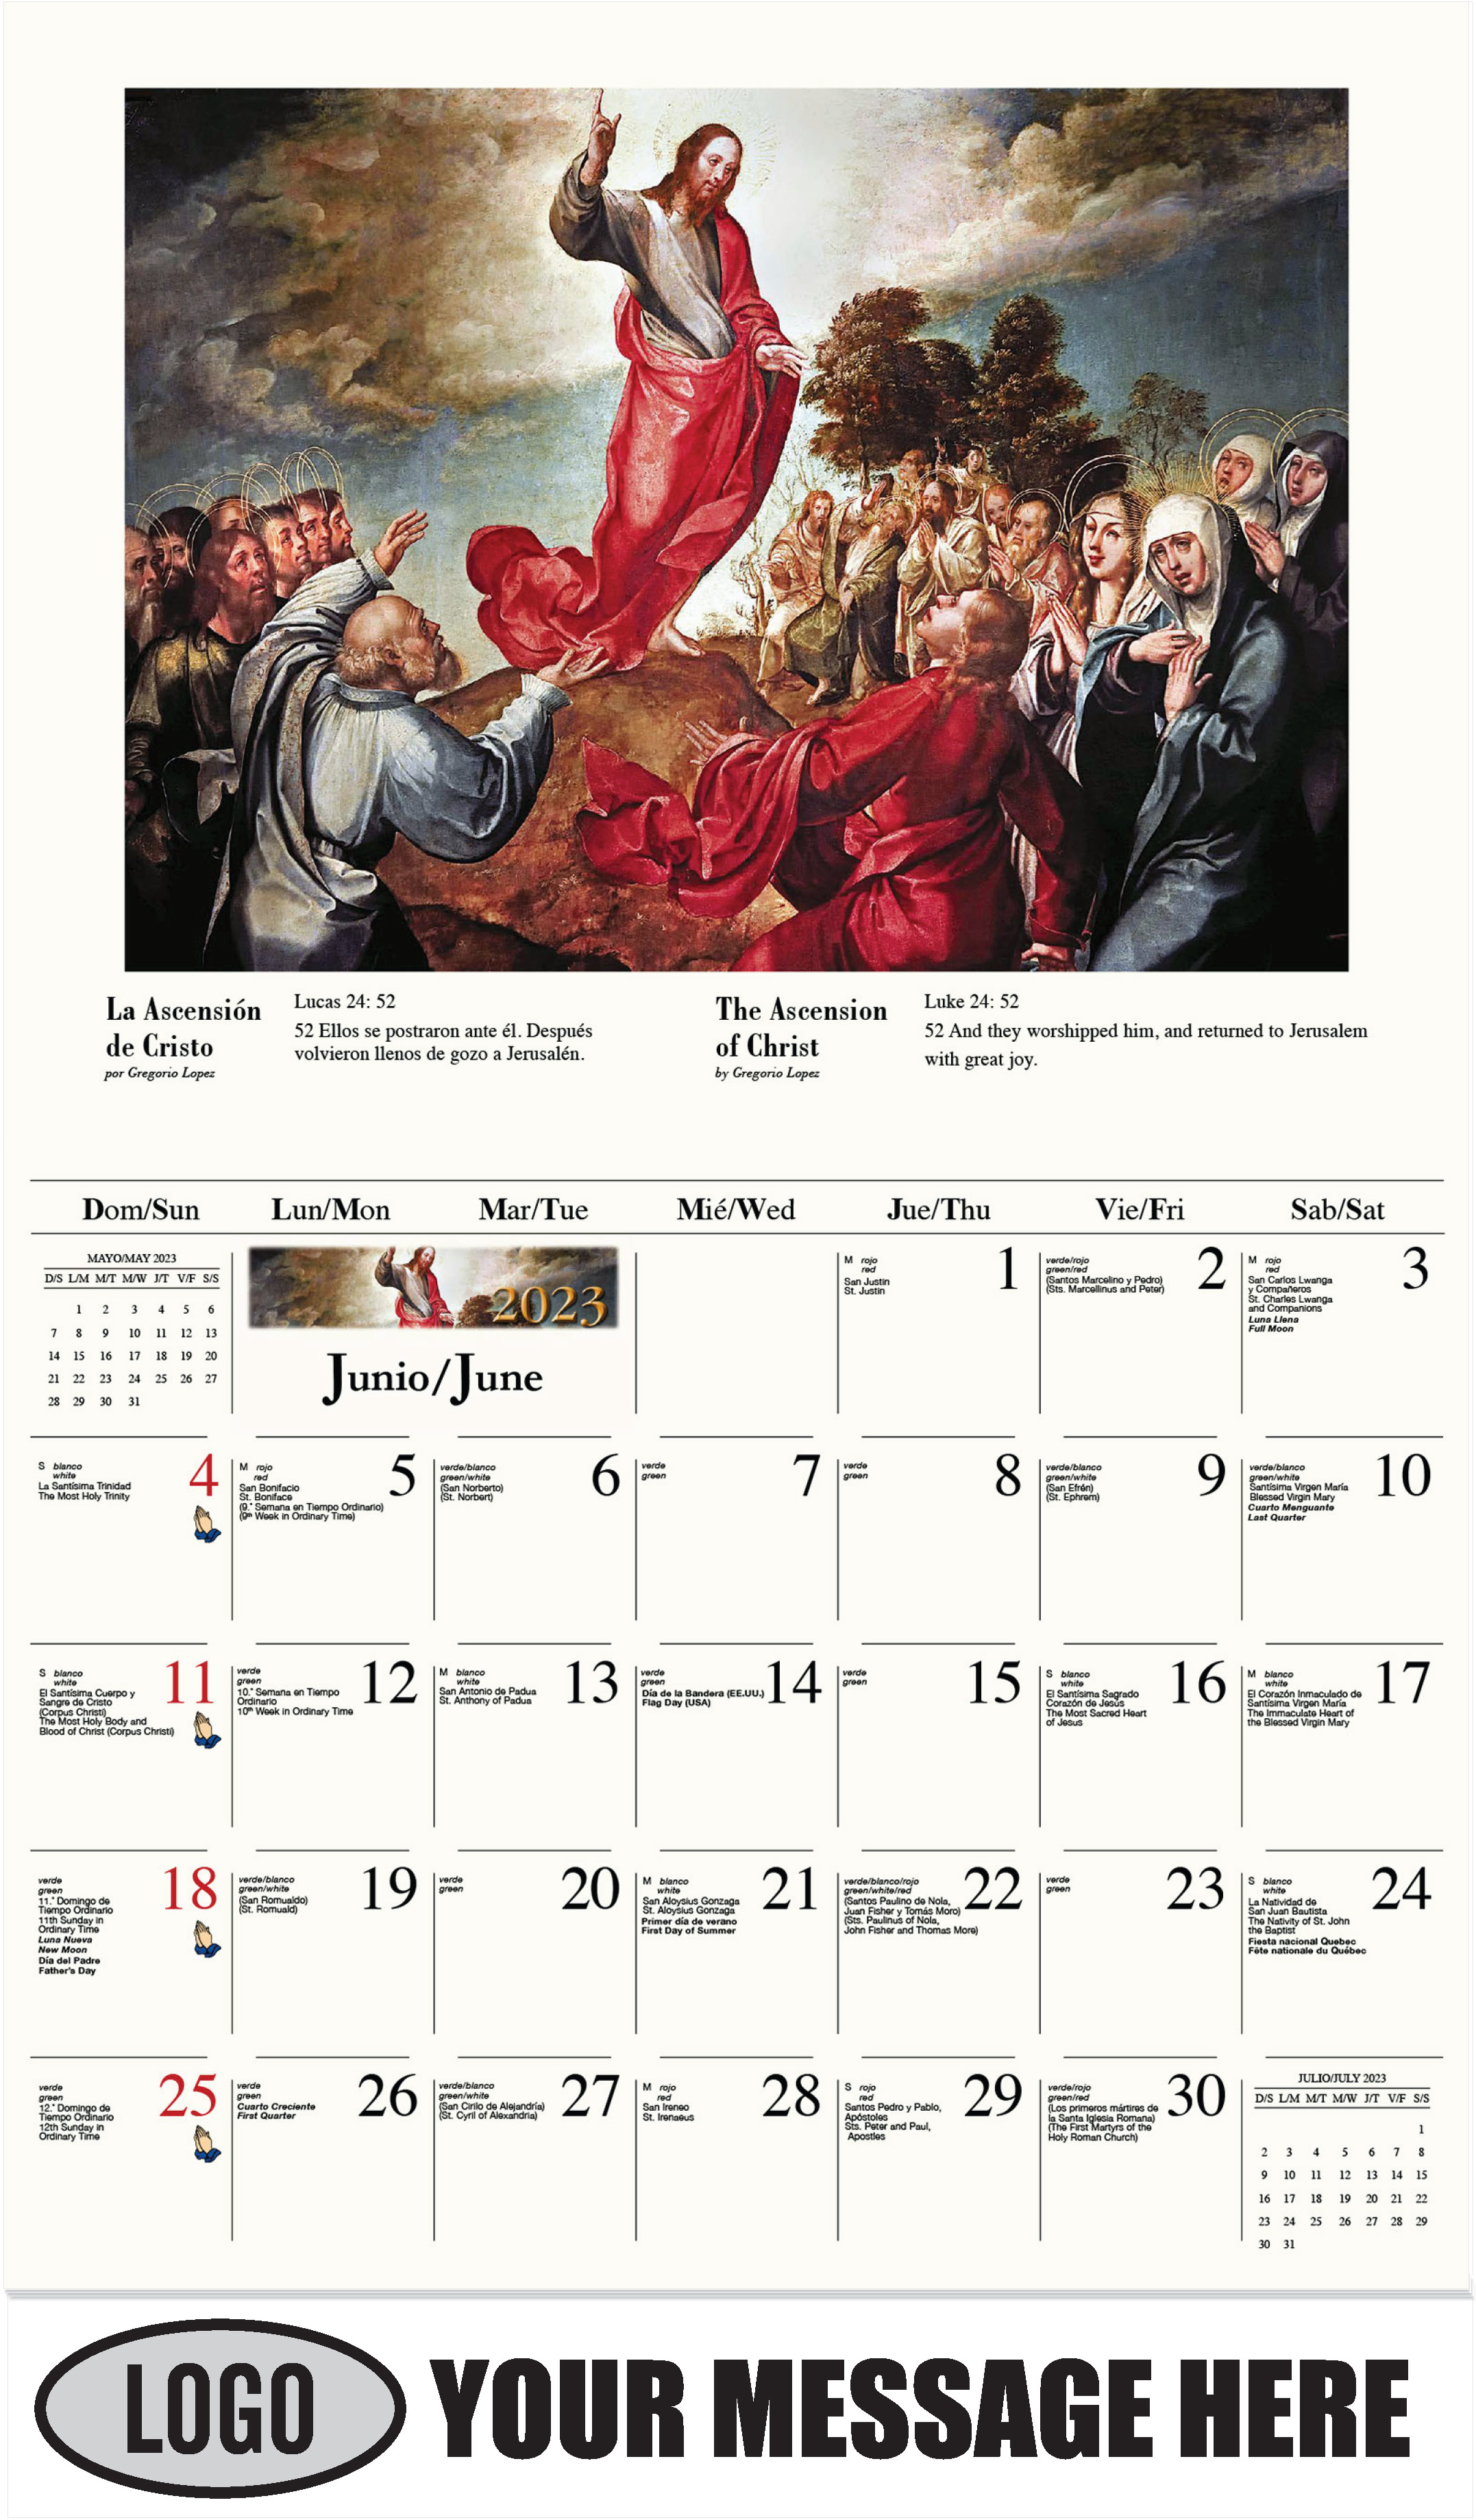 La Ascensión de Cristo por Gregorio Lopez - June - Catholic Inspiration (Spanish-English bilingual) 2023 Promotional Calendar